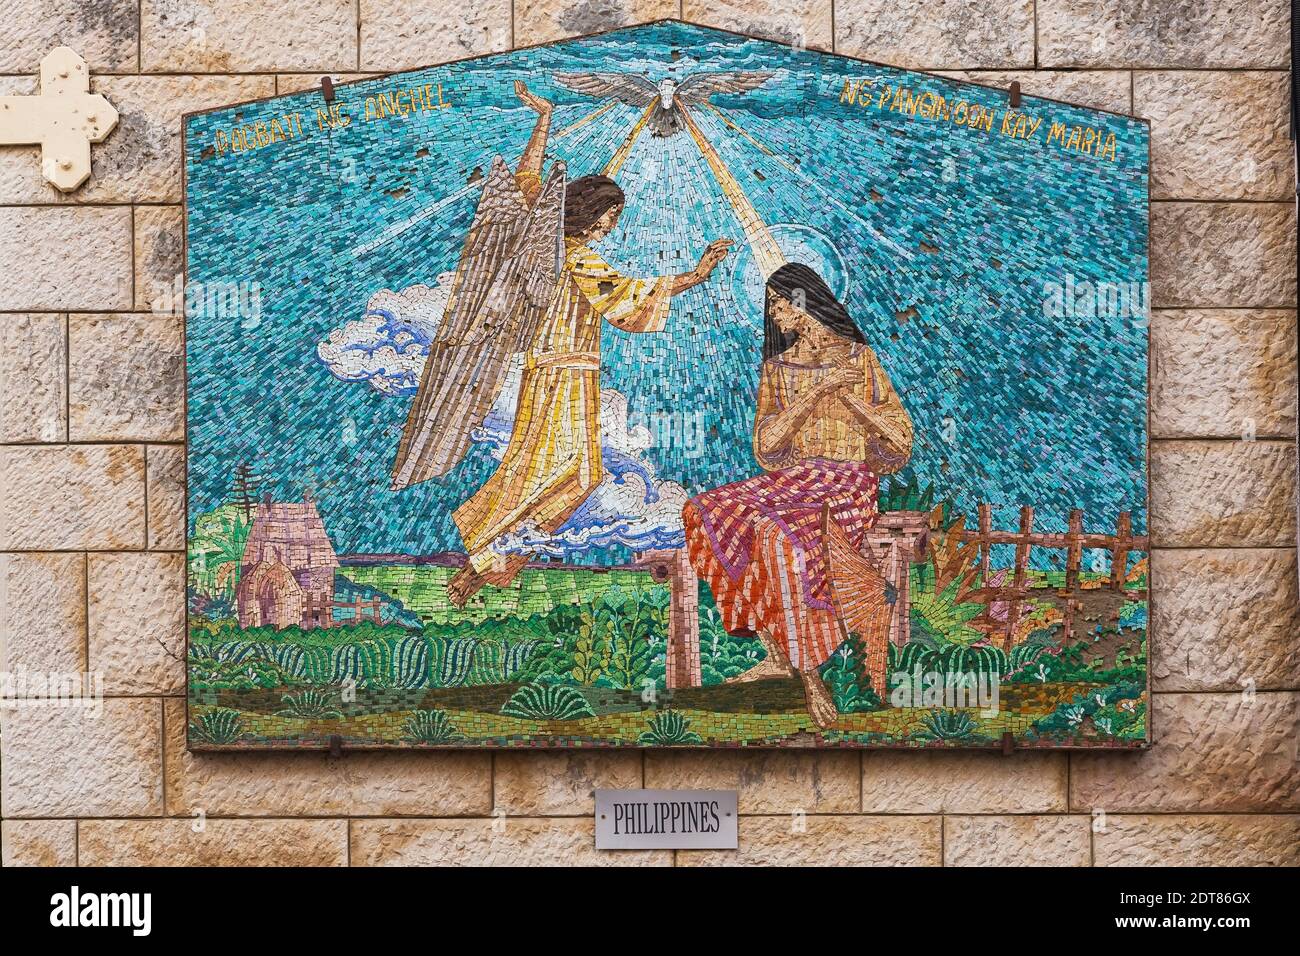 Mur de pierre avec mosaïque de scène religieuse des Philippines, l'église de l'Annonciation, Nazareth, Israël. Banque D'Images